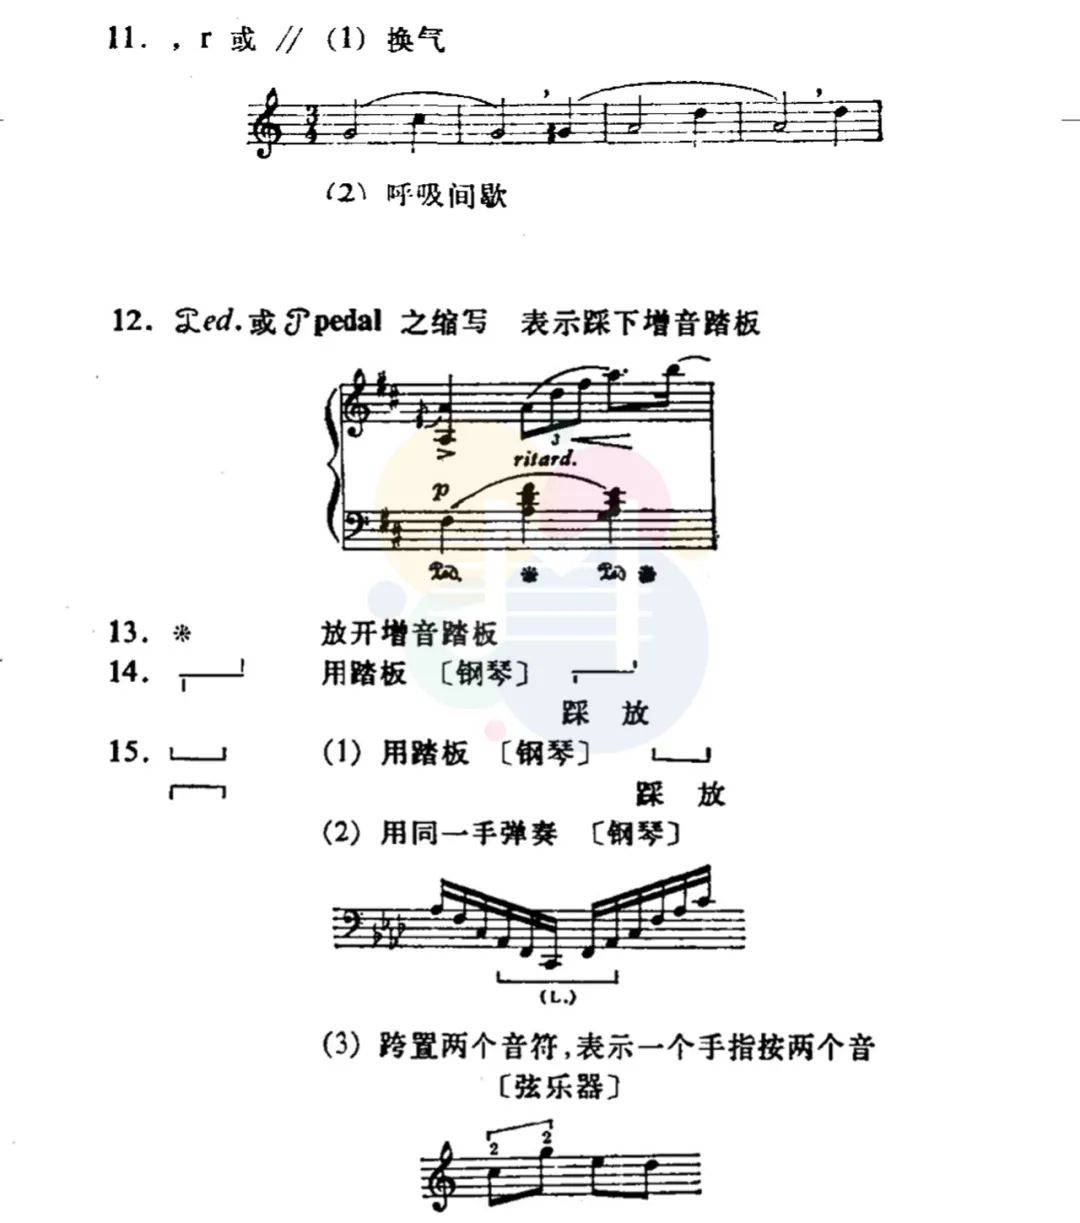 具体解读钢琴谱上的特殊符号钢琴谱中所有术语记号